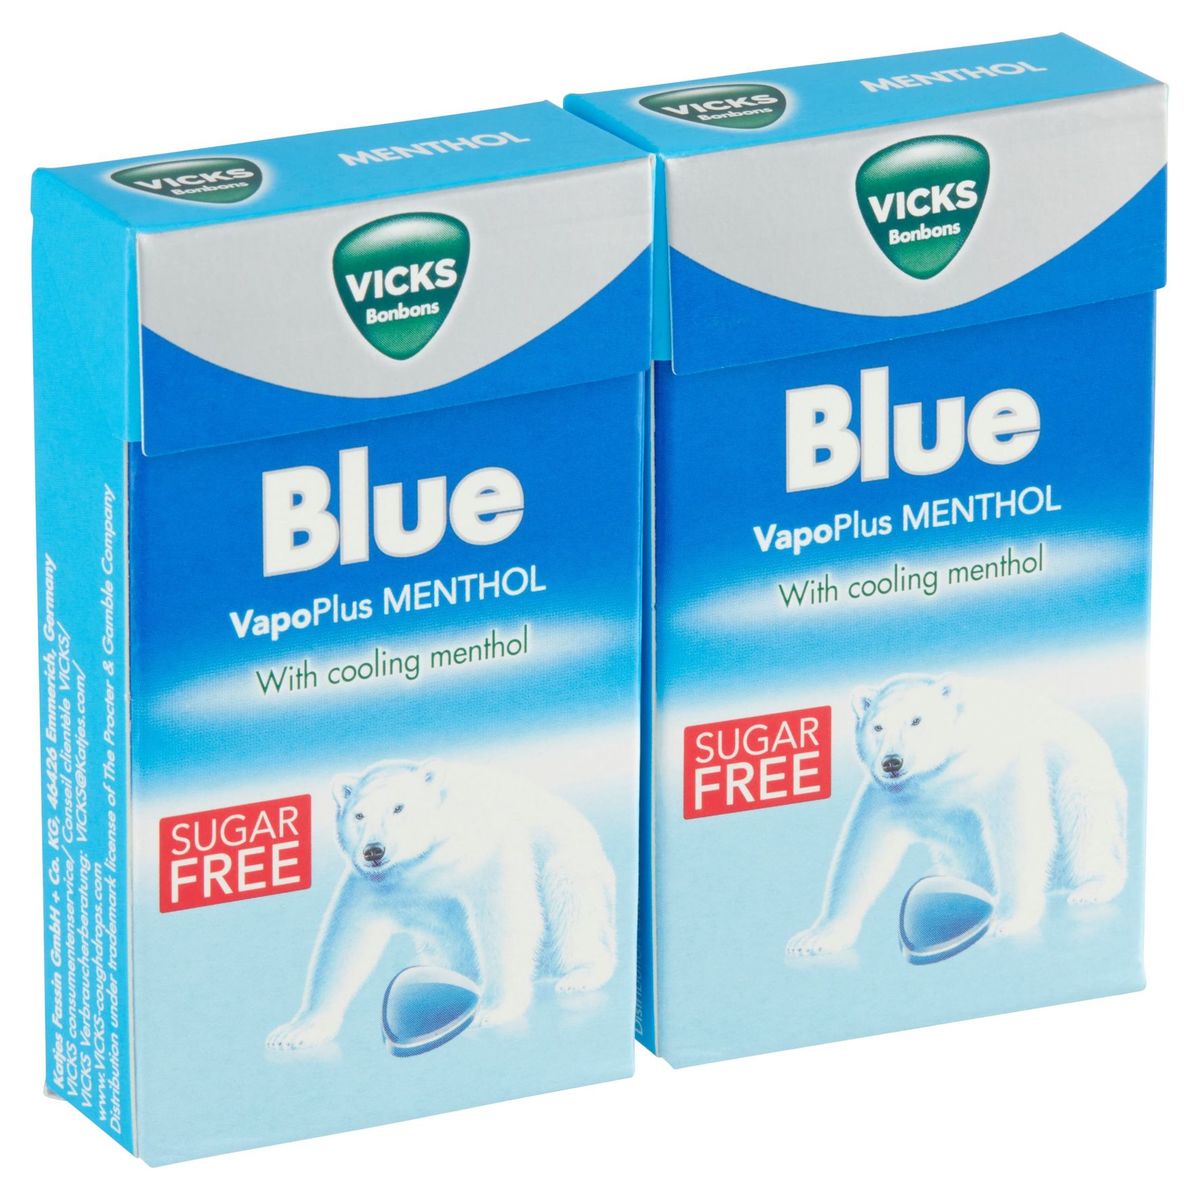 Vicks Bonbons Blue VapoPlus Menthol 2 x 40 g